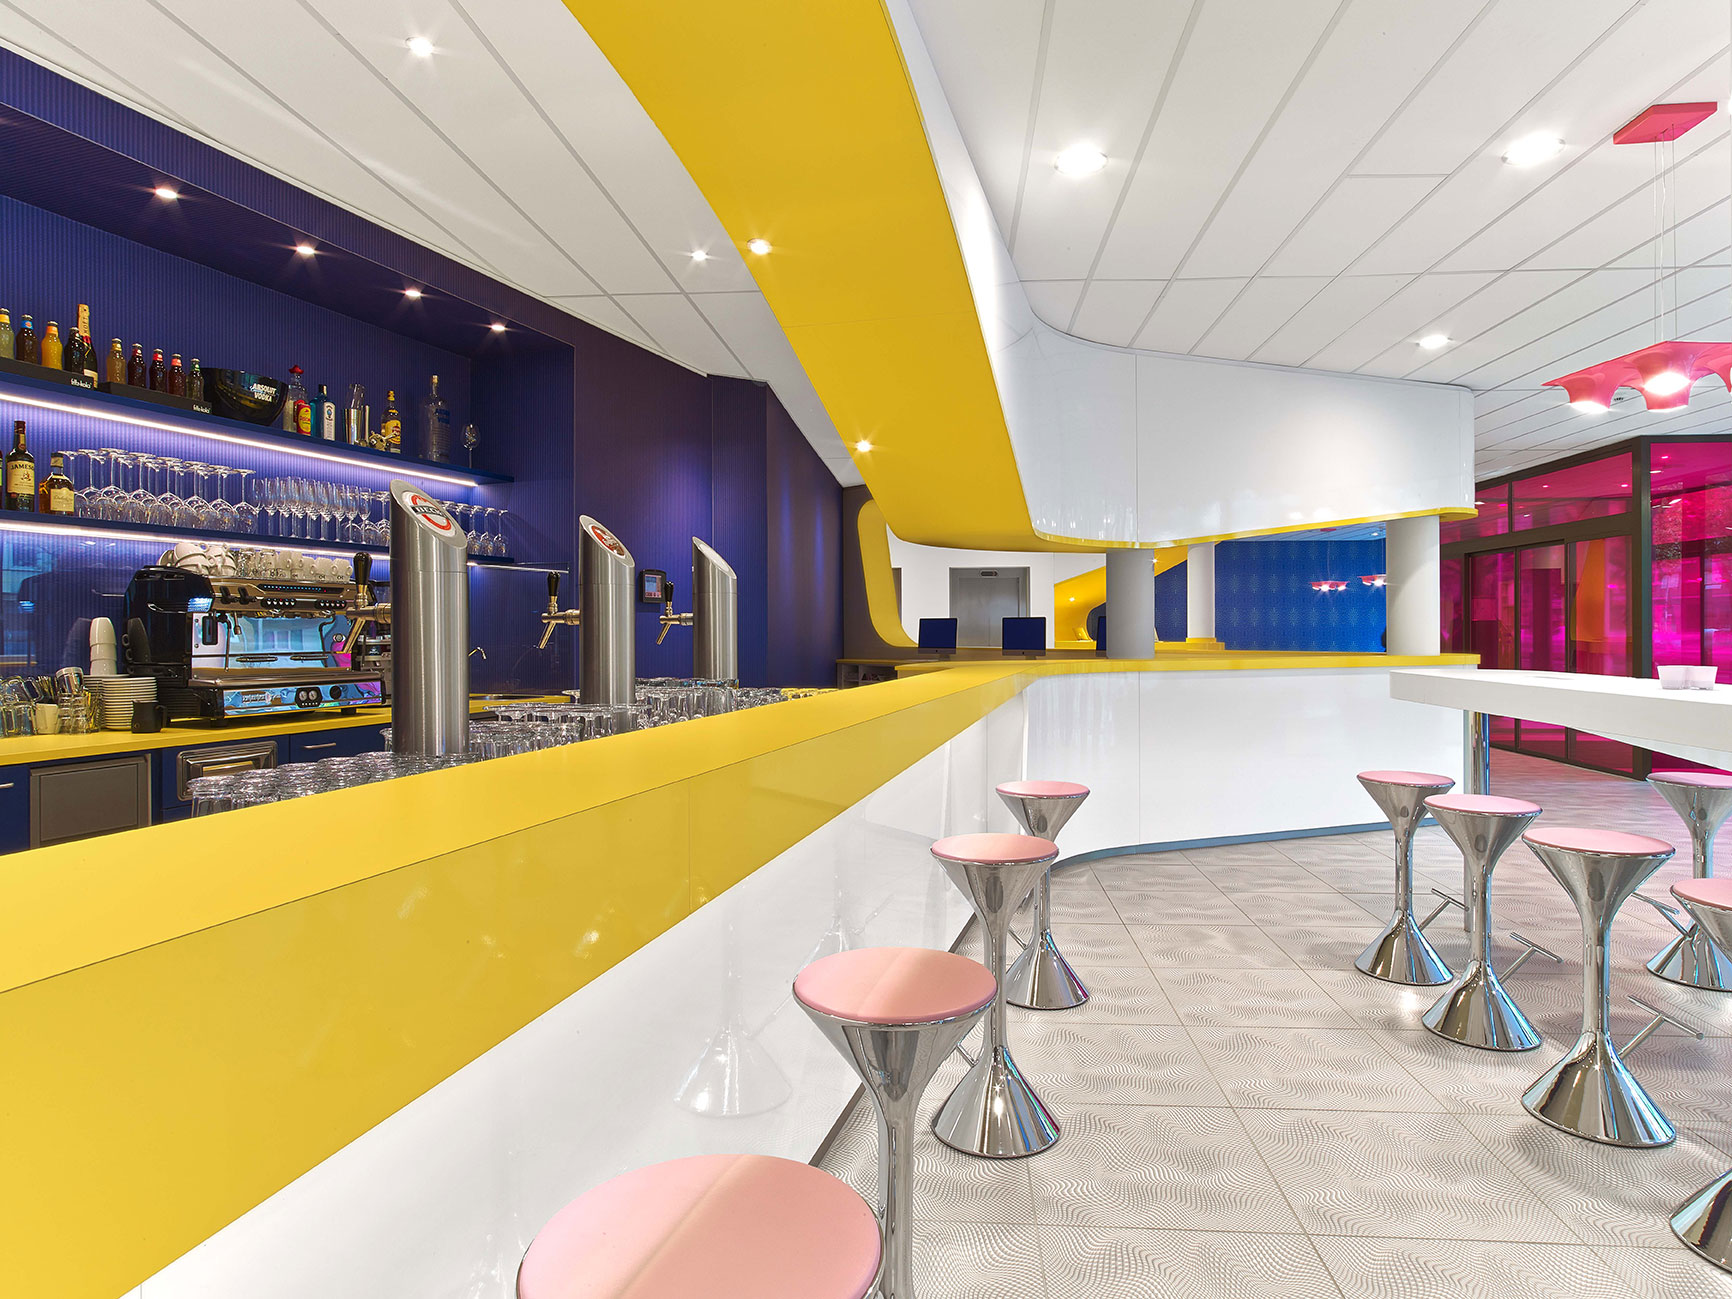 Moderne Bar des Designhotels in Hannover mit gelbem Bartresen und pinken Hockern